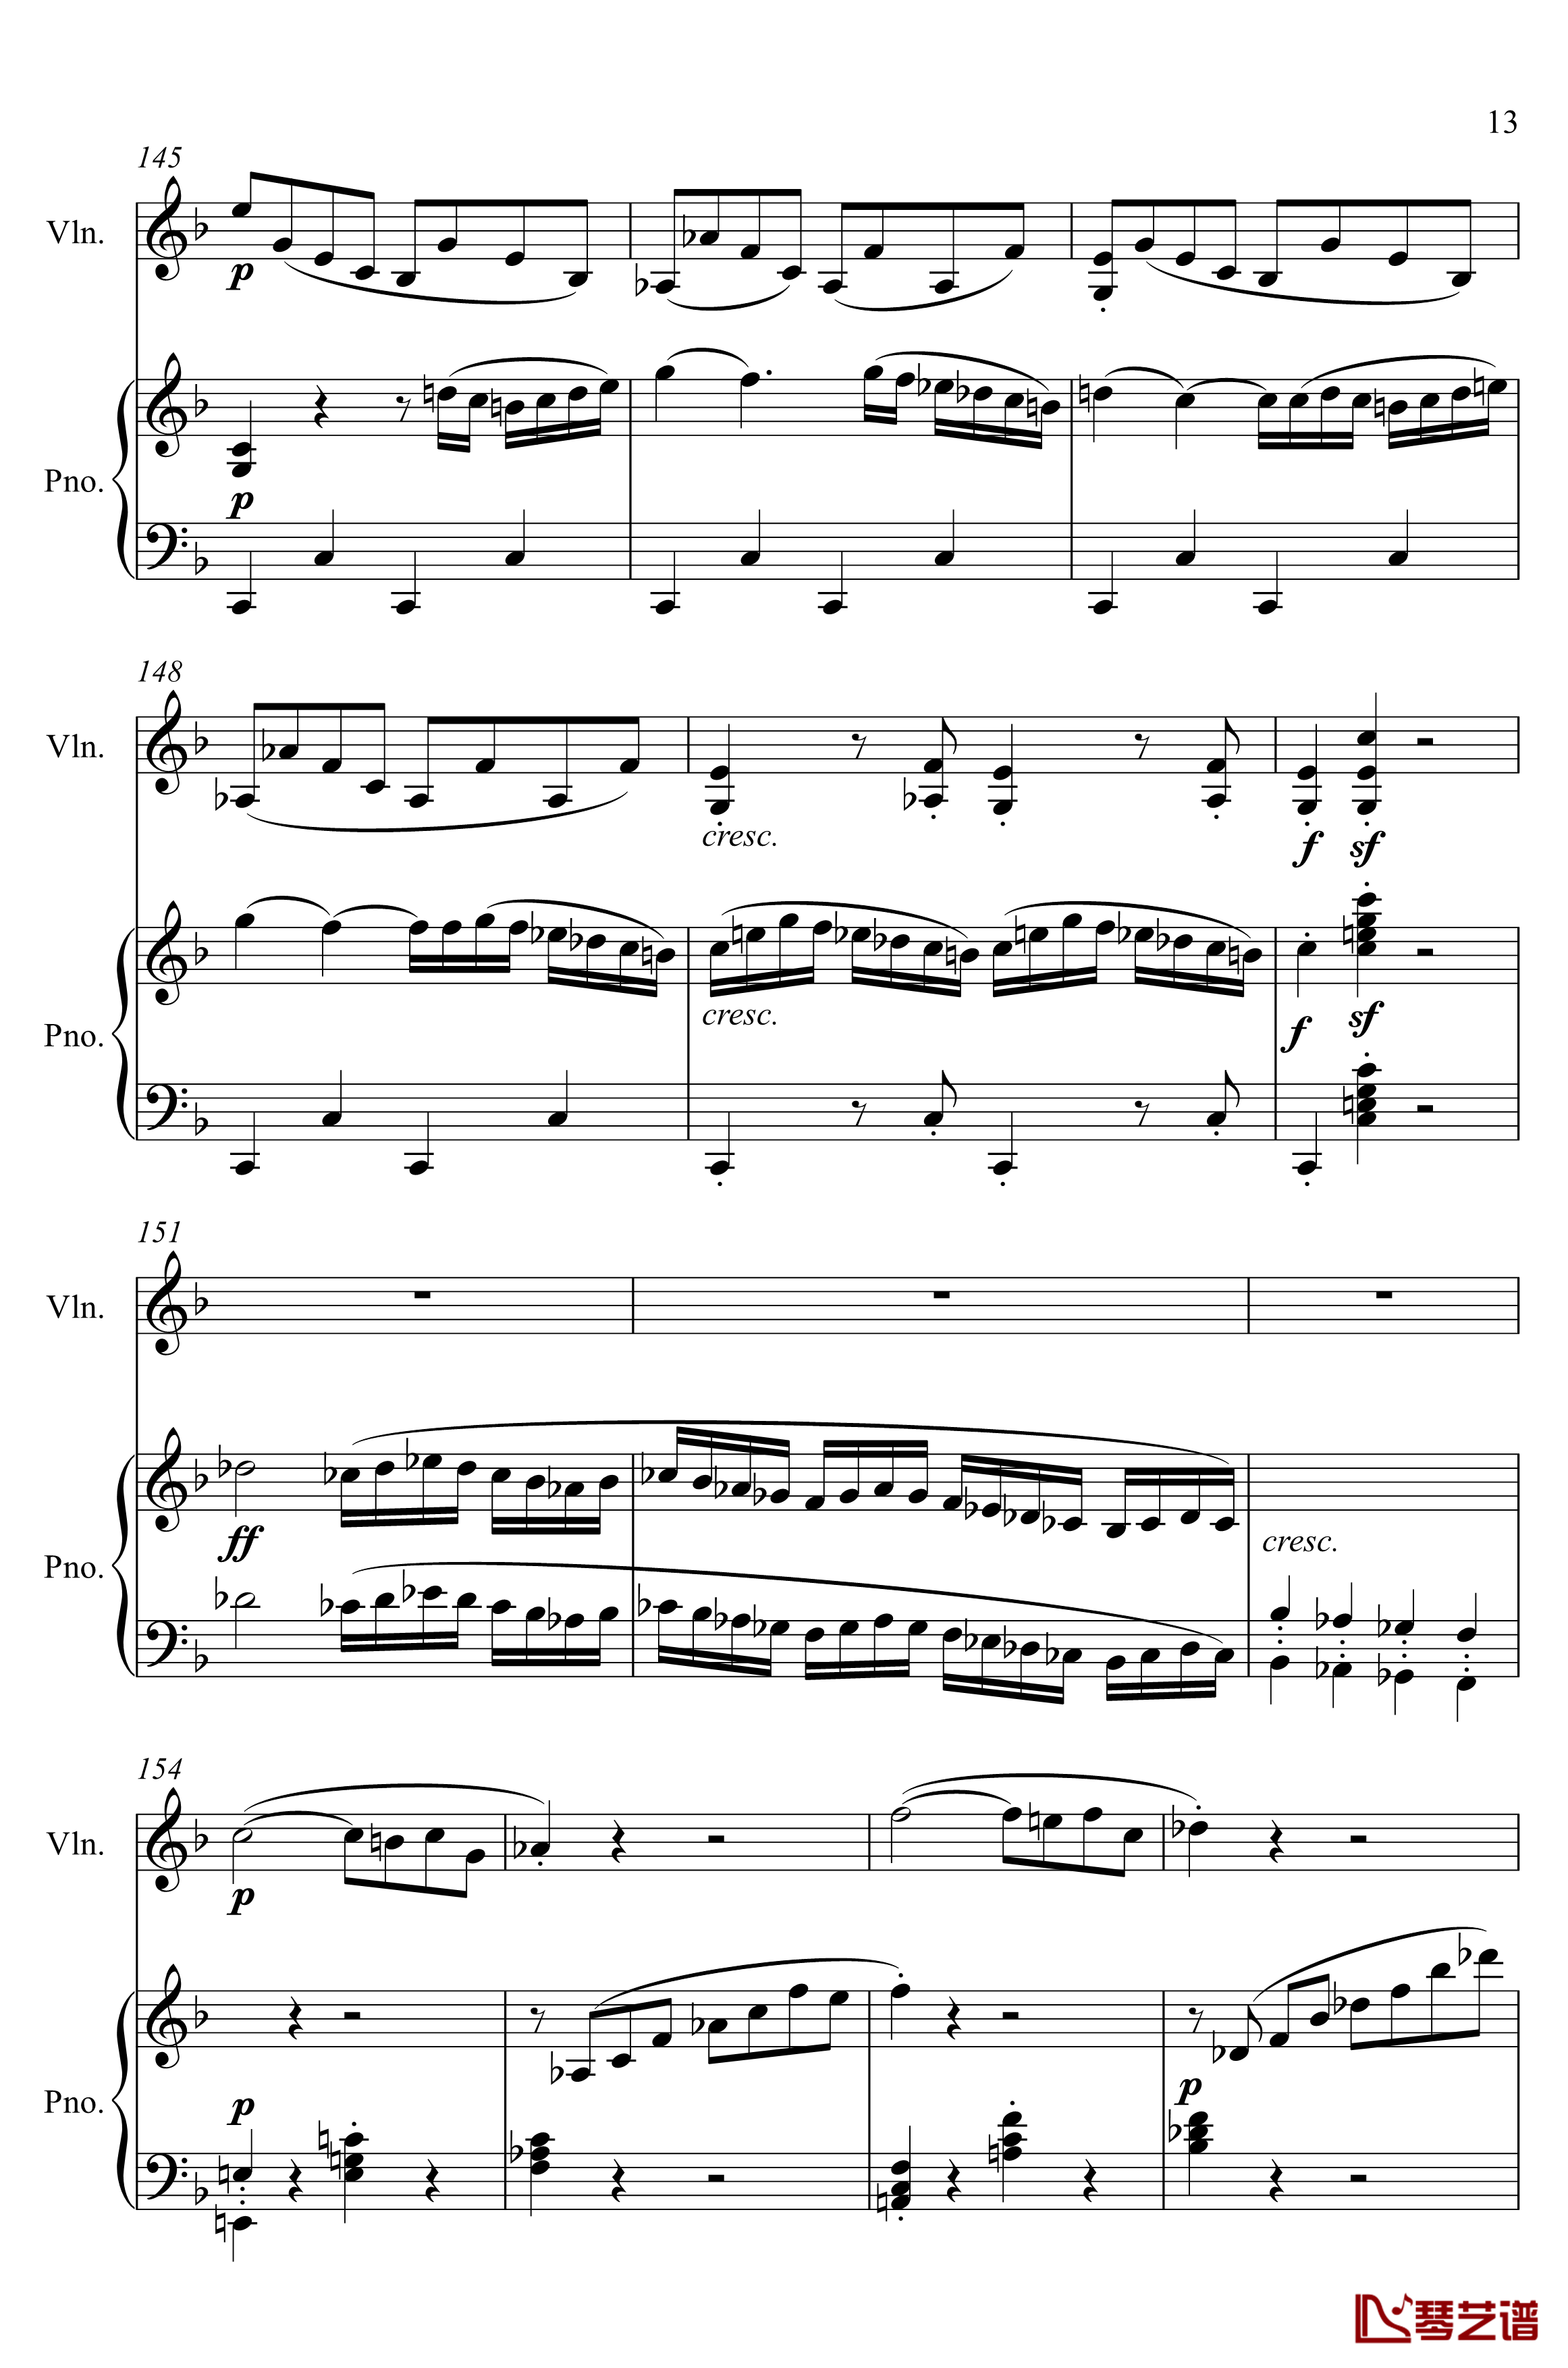 第5小提琴与钢琴奏鸣曲钢琴谱-第一乐章钢琴谱-贝多芬-beethoven13